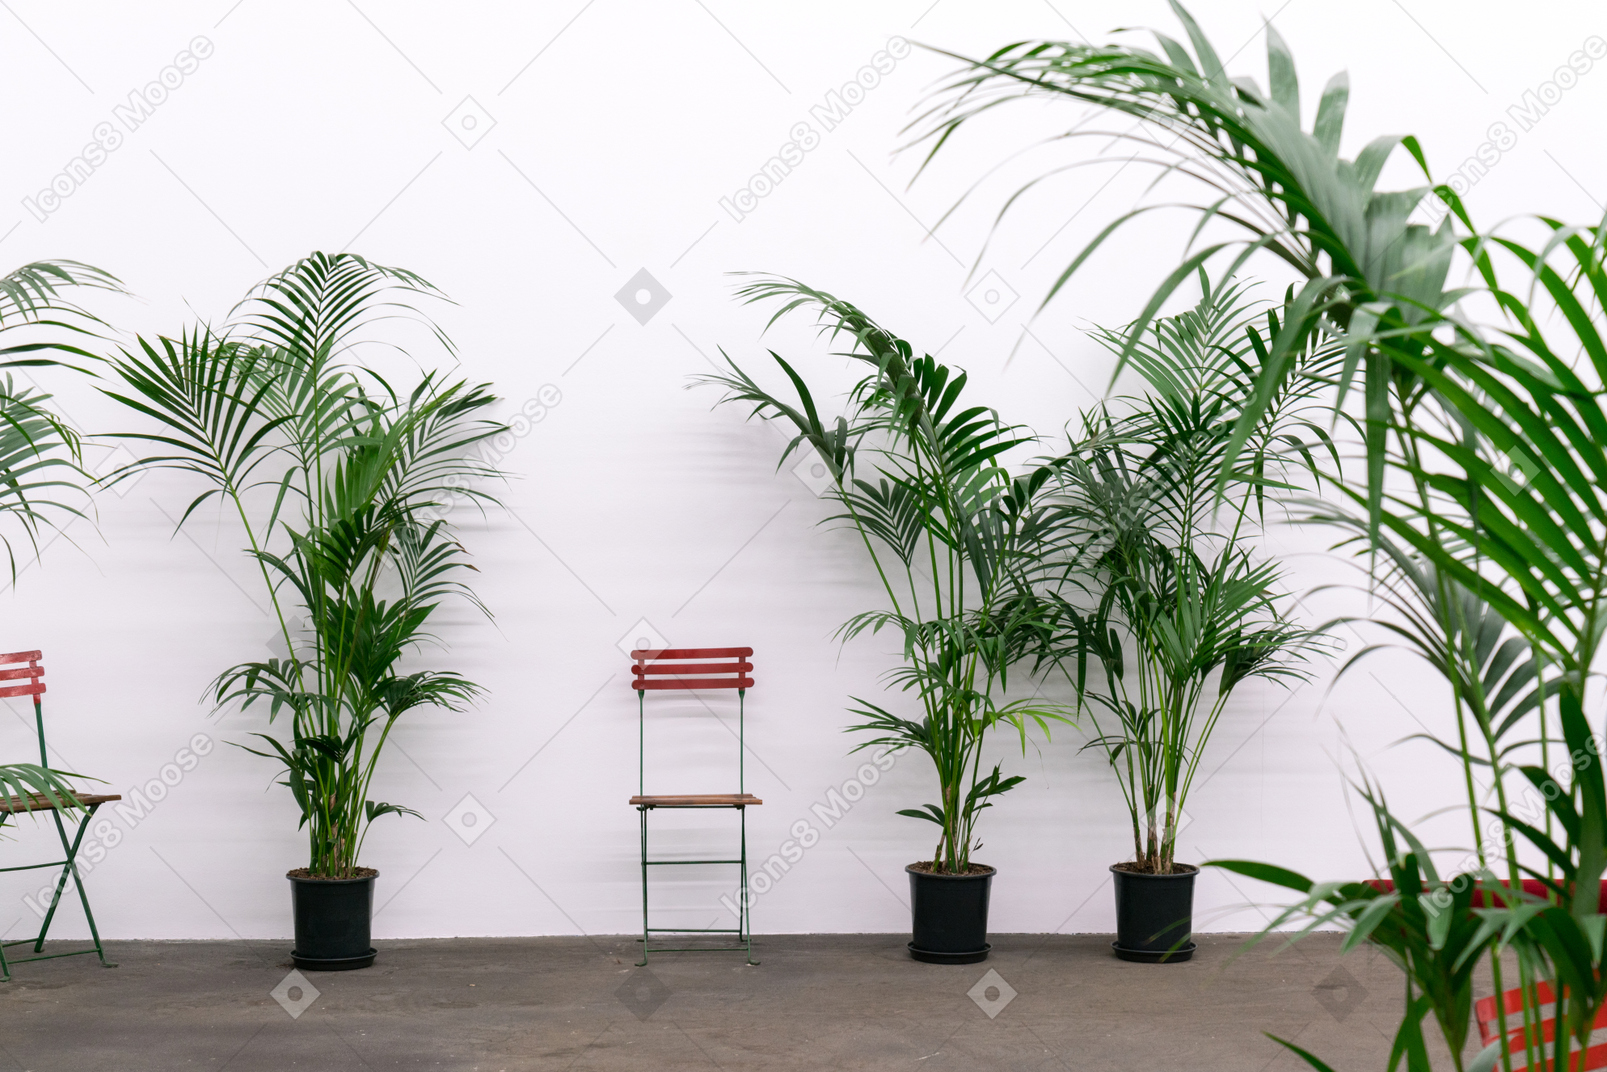 Два стула в окружении растений в горшках